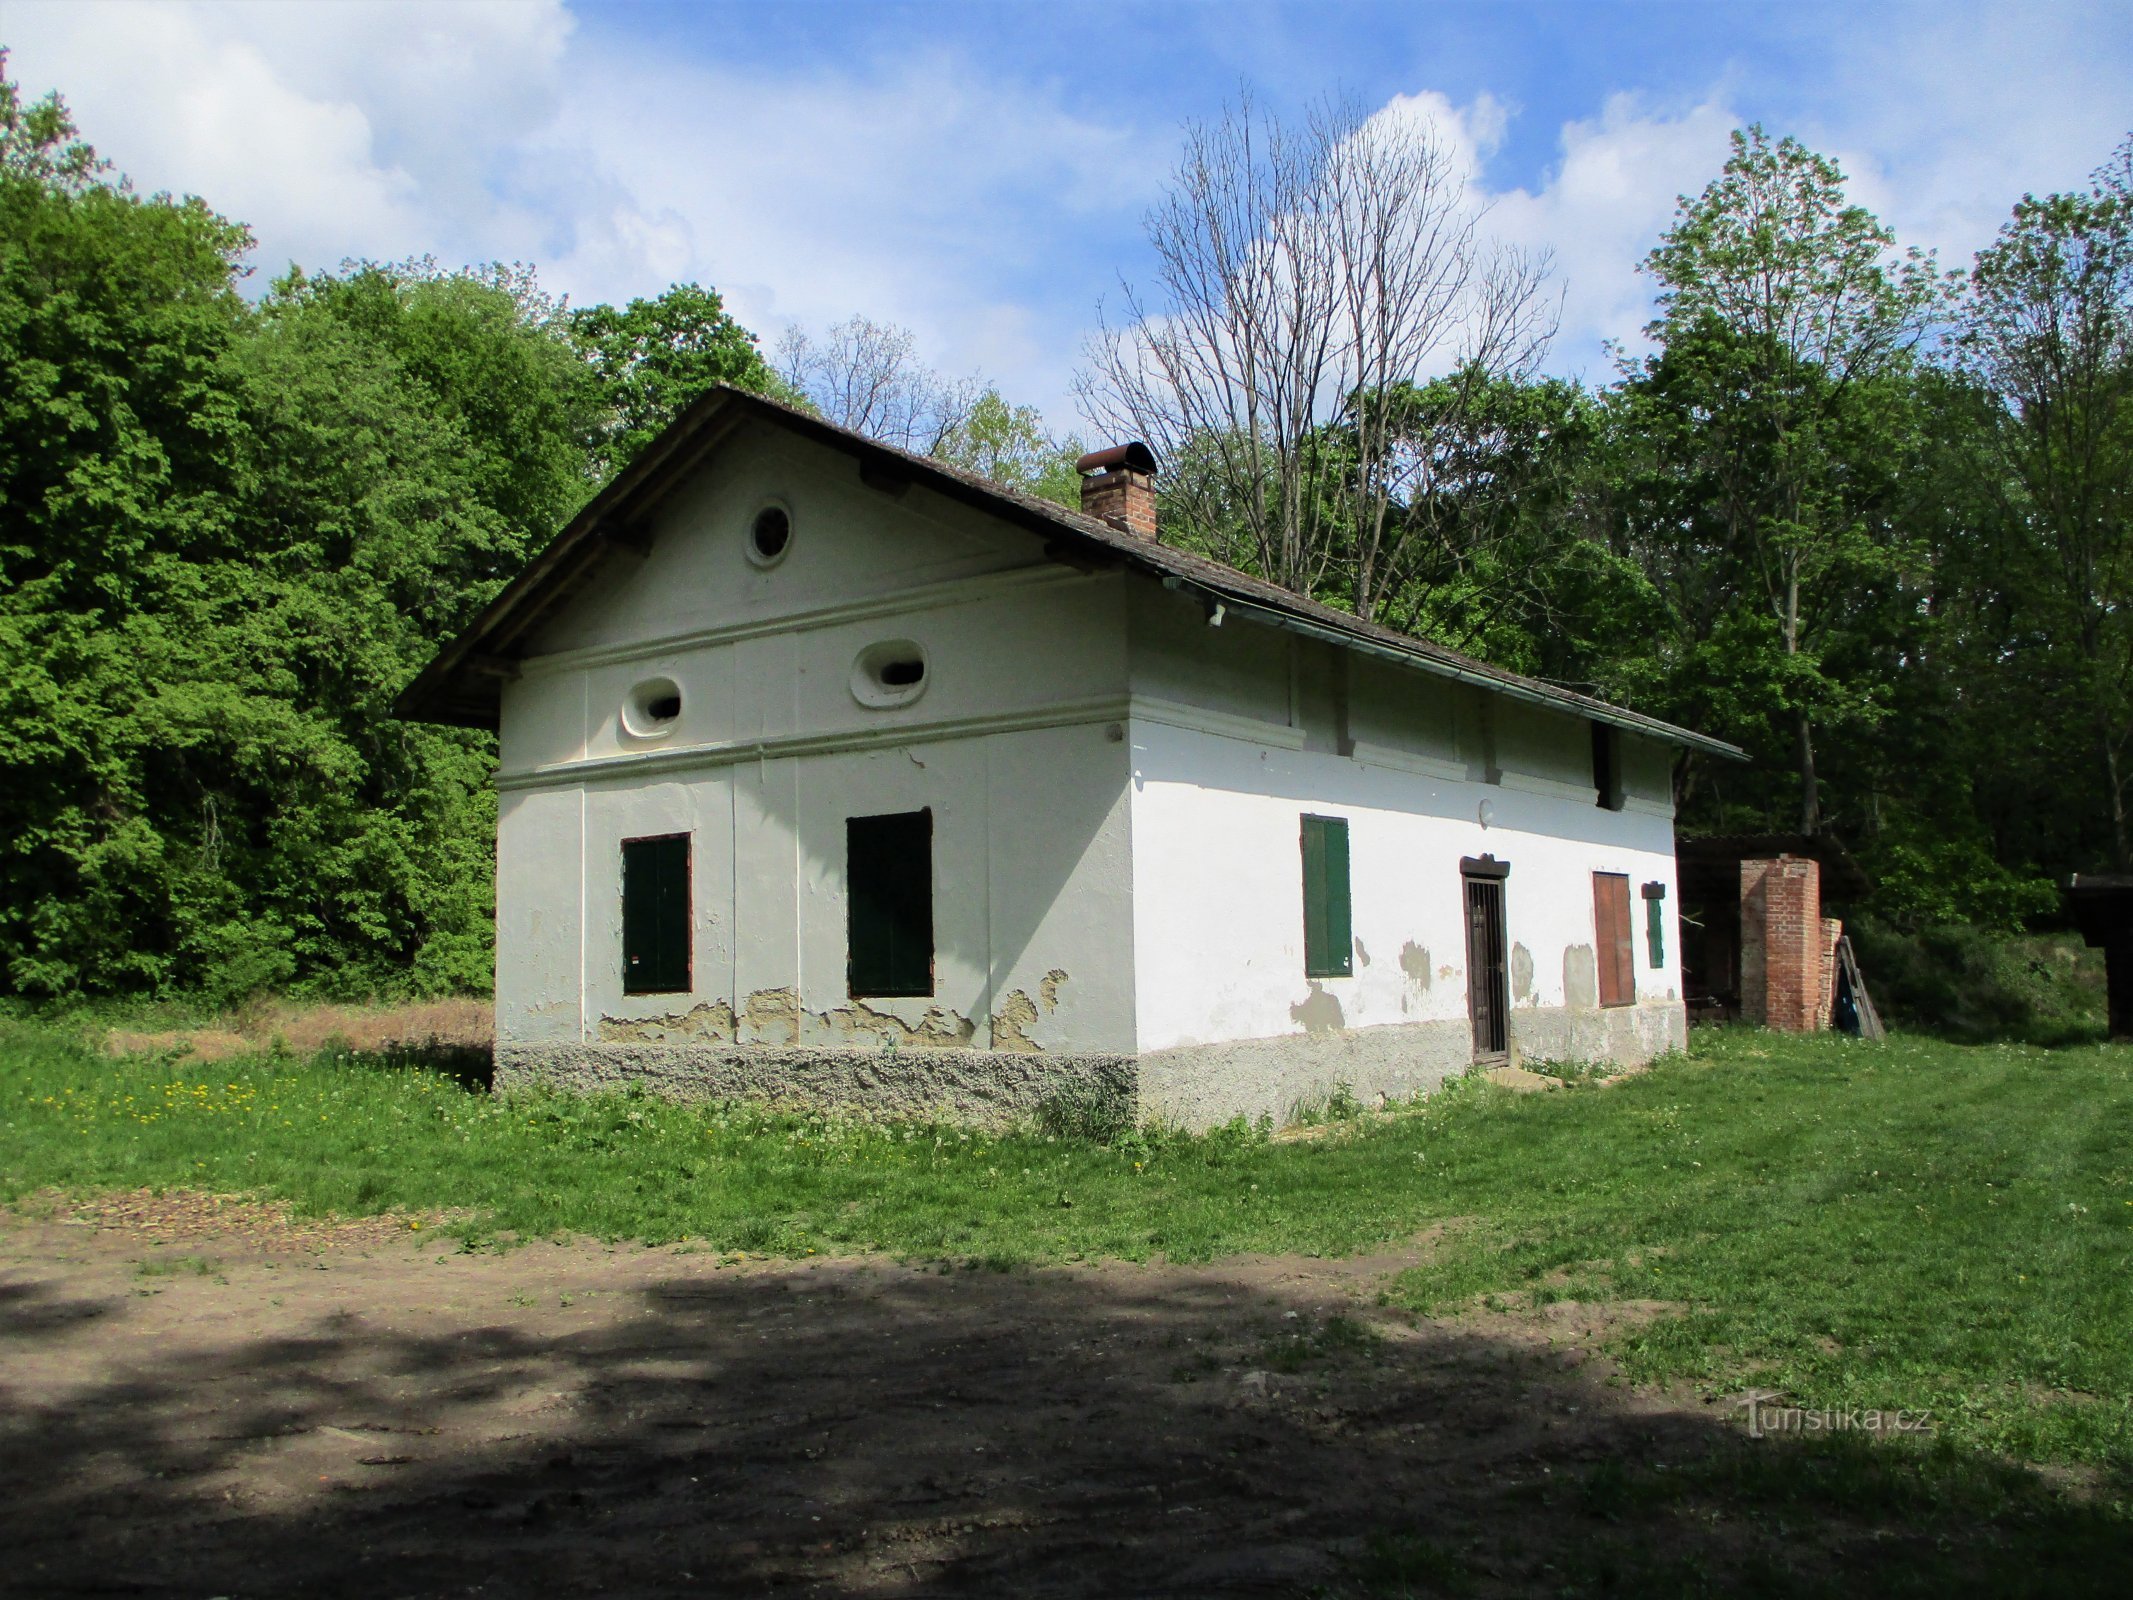 Nekdanji graščinski lovski dom v Kaltouzu (Černilov, 11.5.2020. XNUMX. XNUMX)